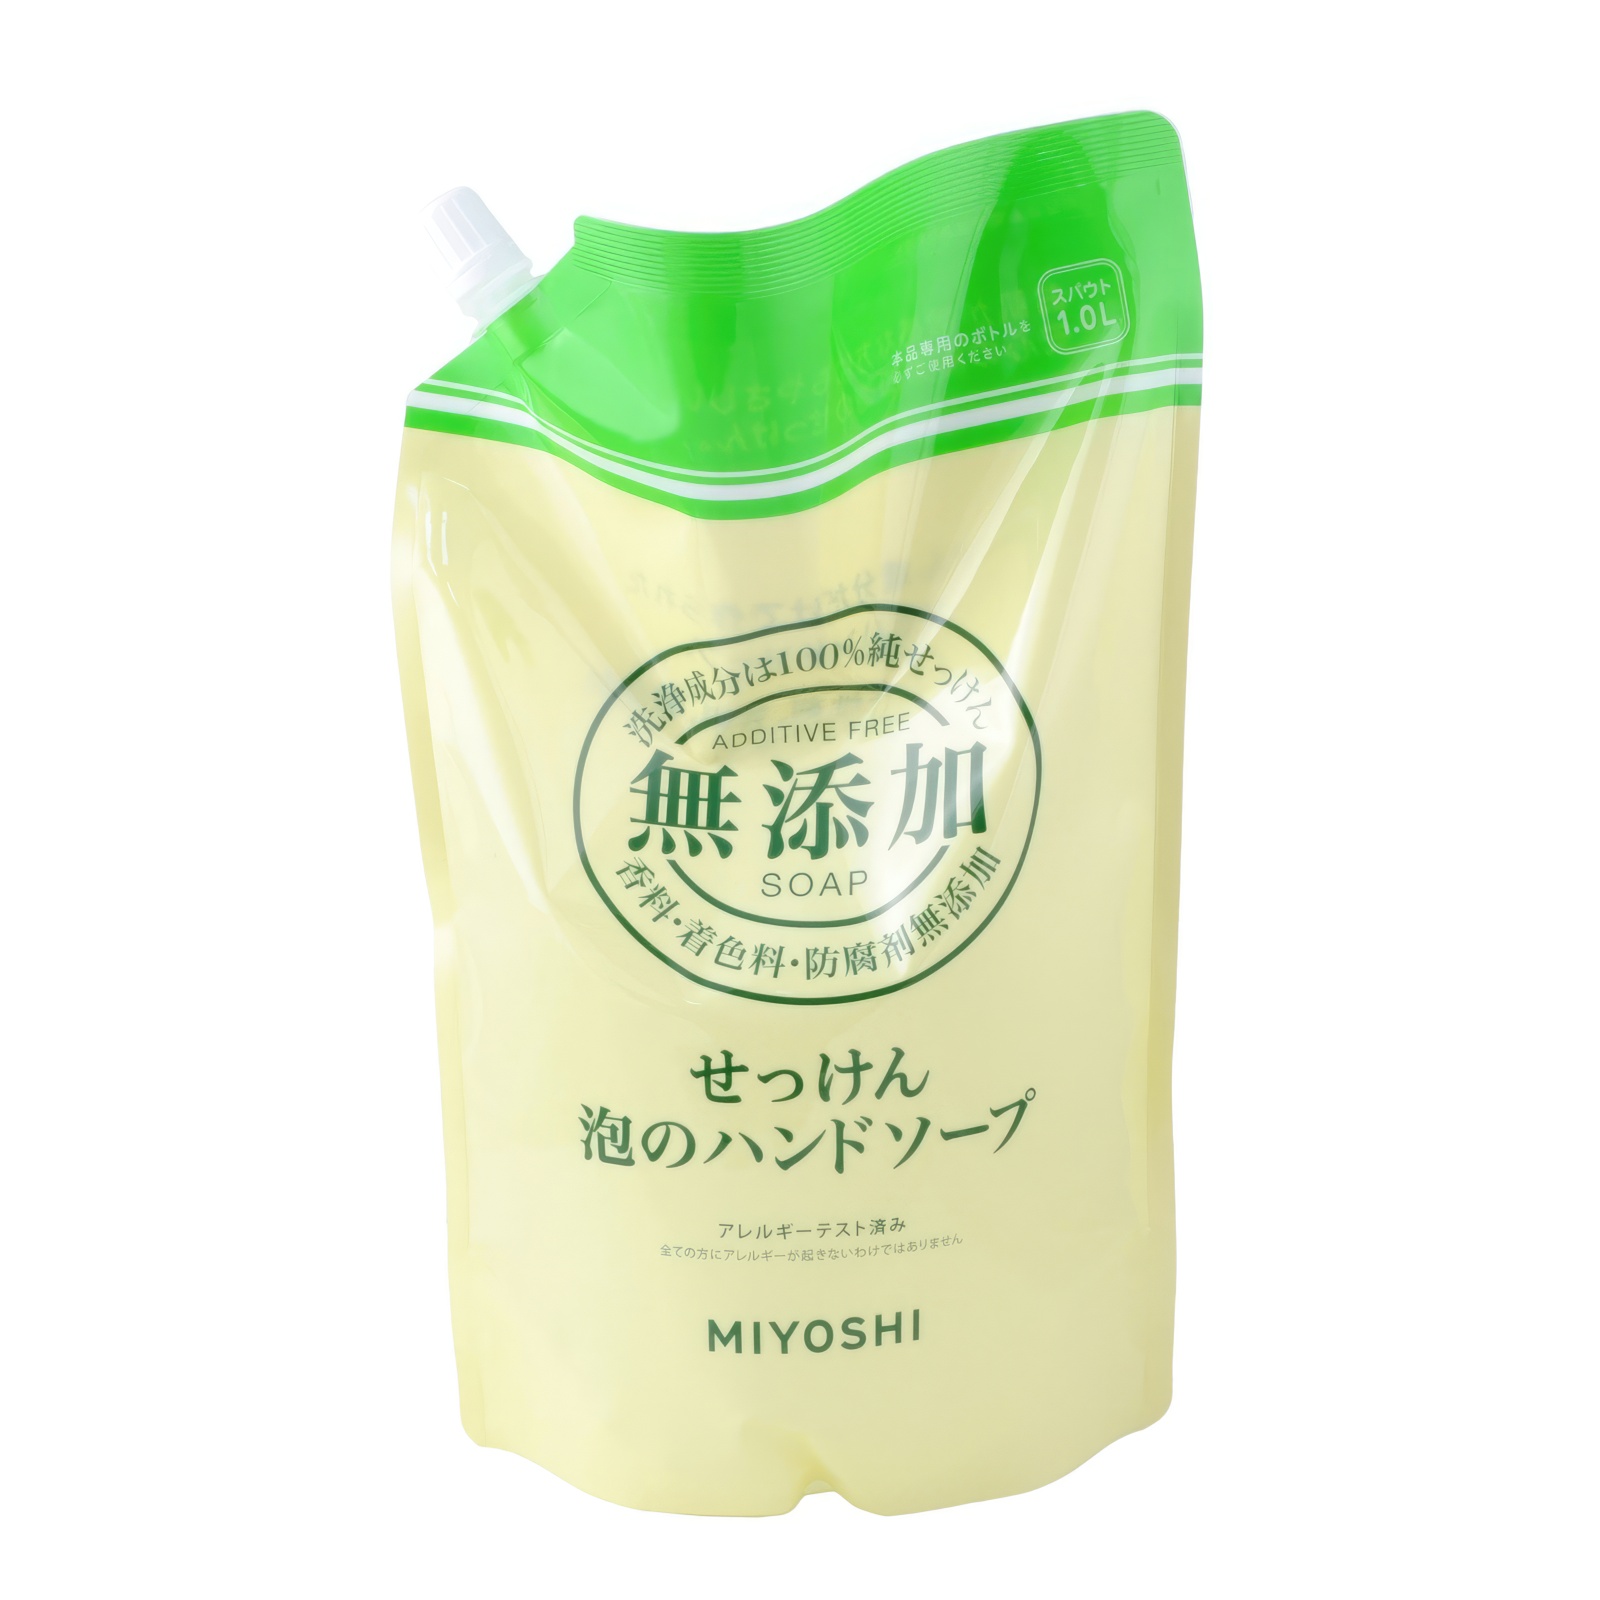 Жидкое мыло MIYOSHI Натуральное пенящееся эко для рук дойпак 1 л myloff vsb твёрдая мыльная основа 1 кг